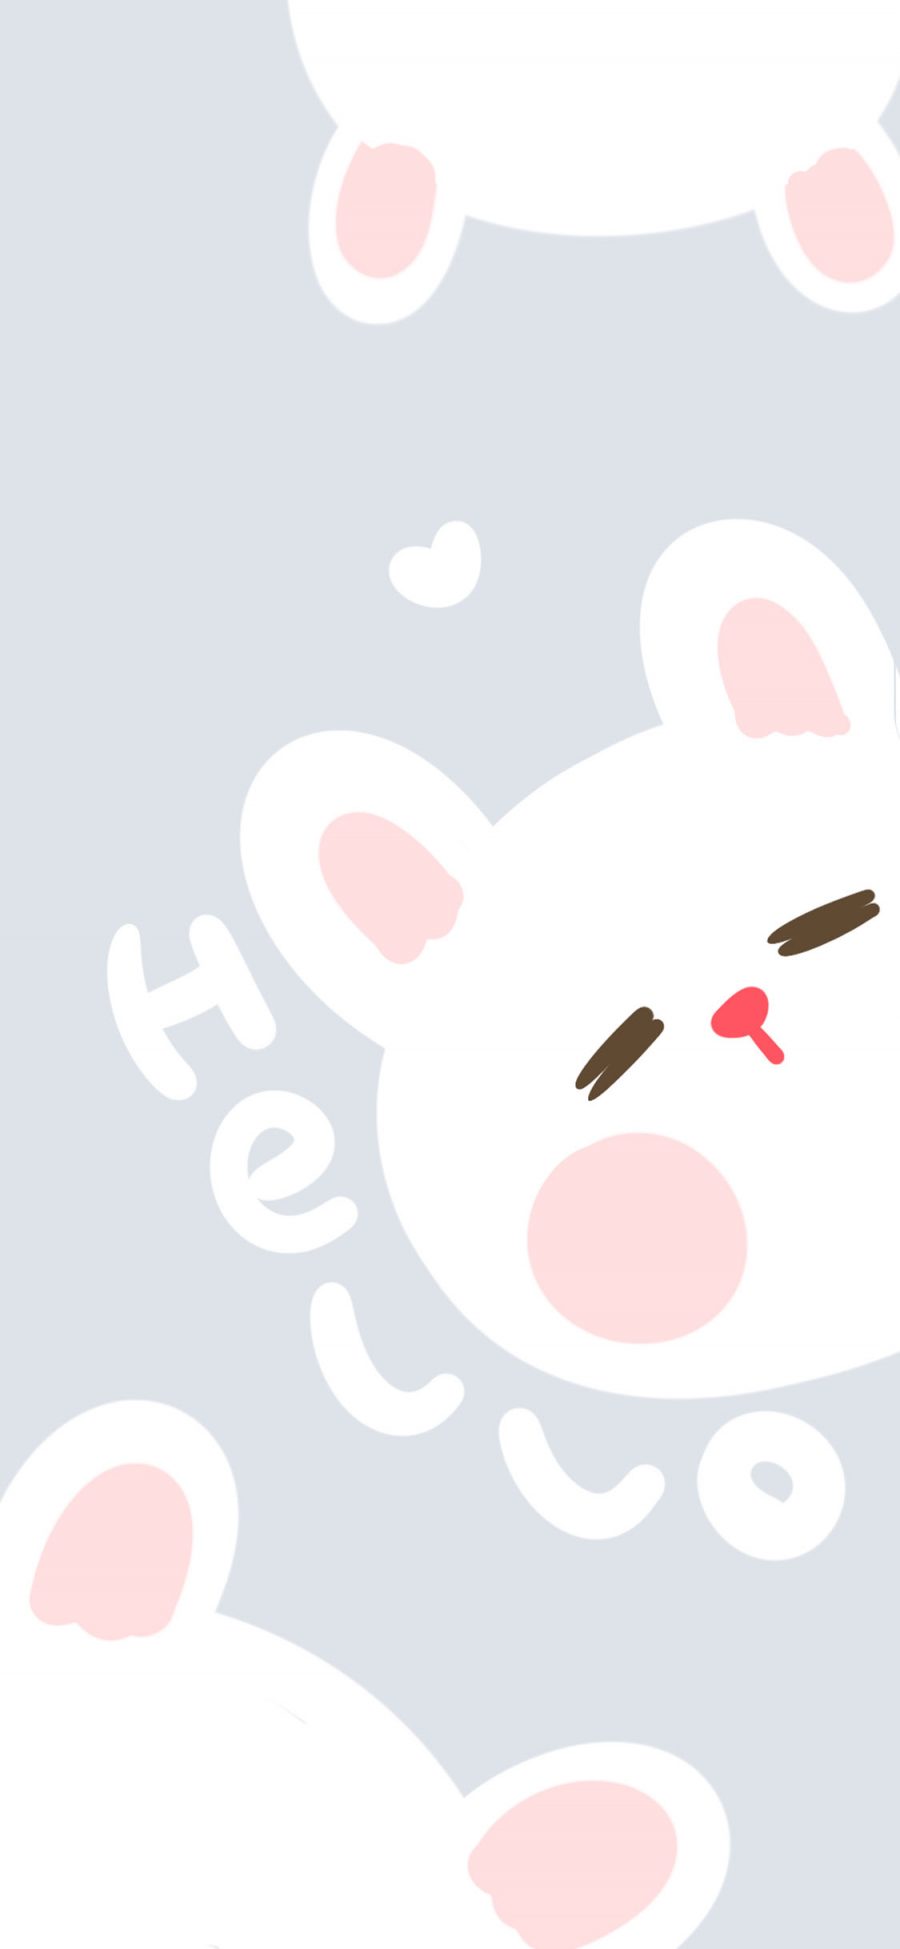 [2436×1125]可爱 卡通 兔子 hello 苹果手机动漫壁纸图片